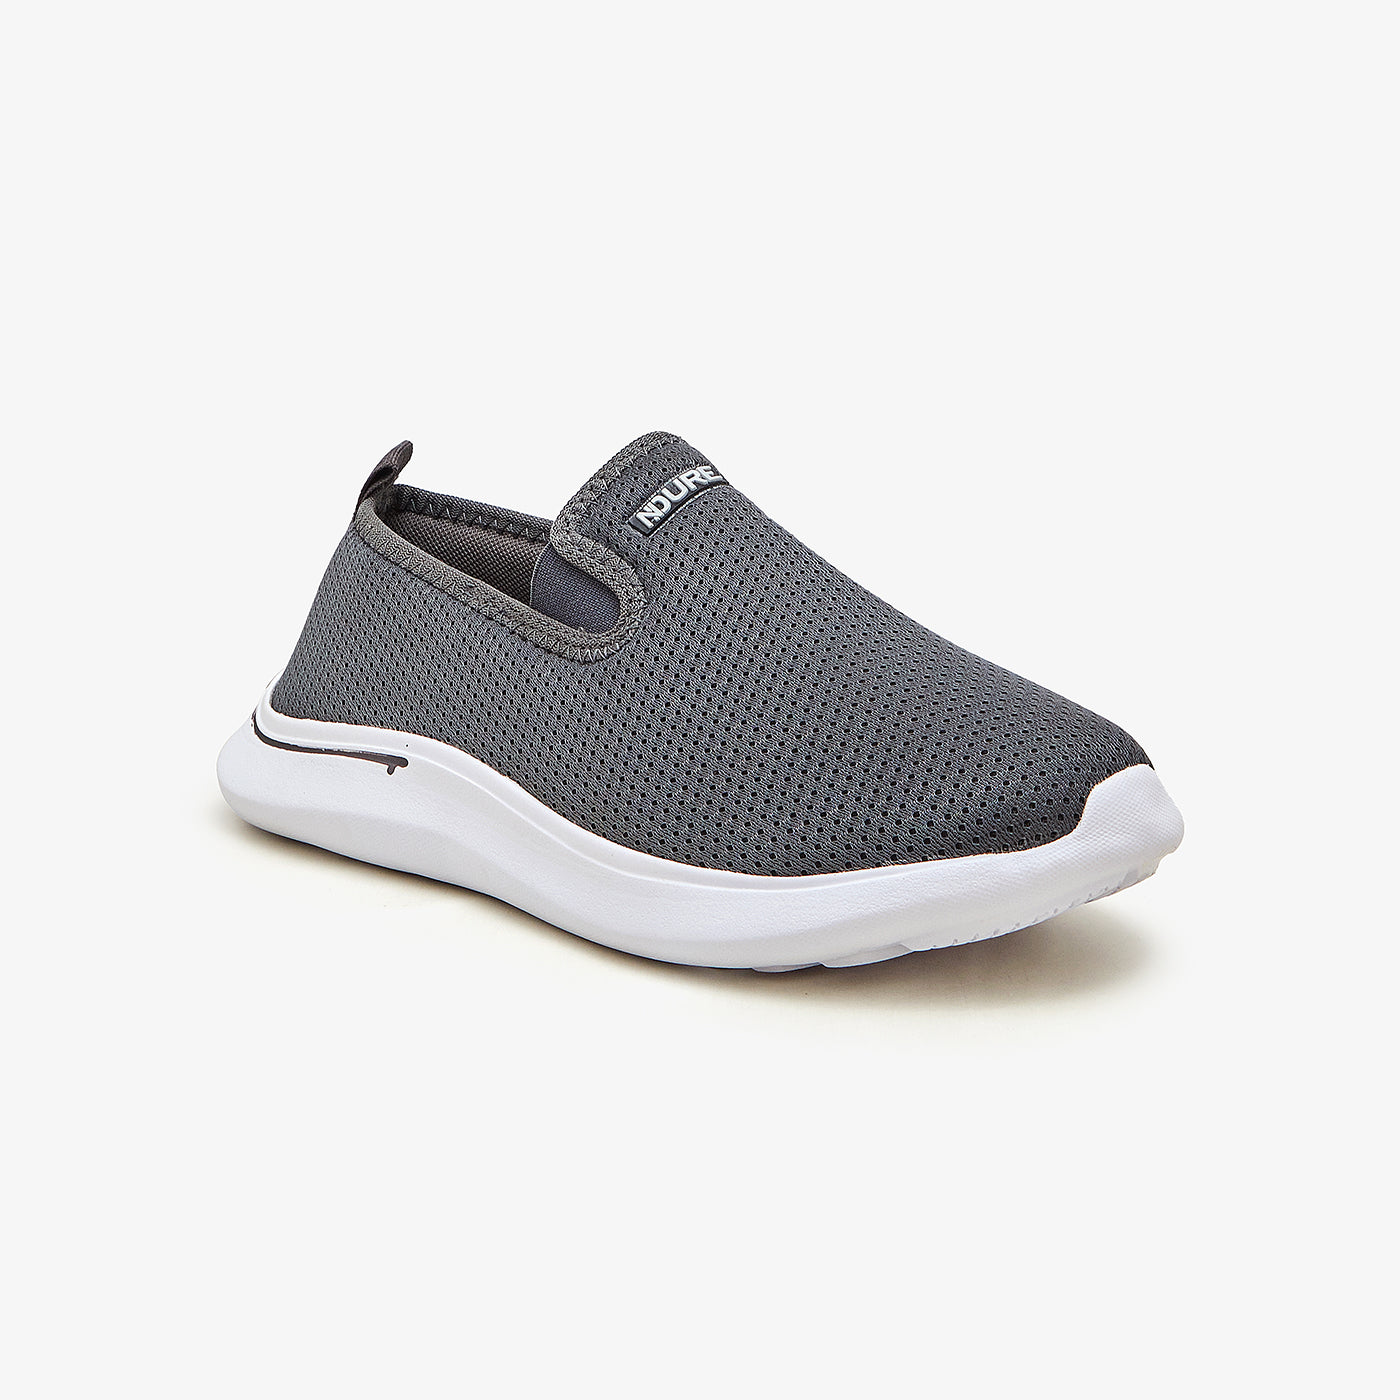 Buy Men Sneakers -Men's Comfy Athletic Shoes M-PR-LOK-0010 – Ndure.com